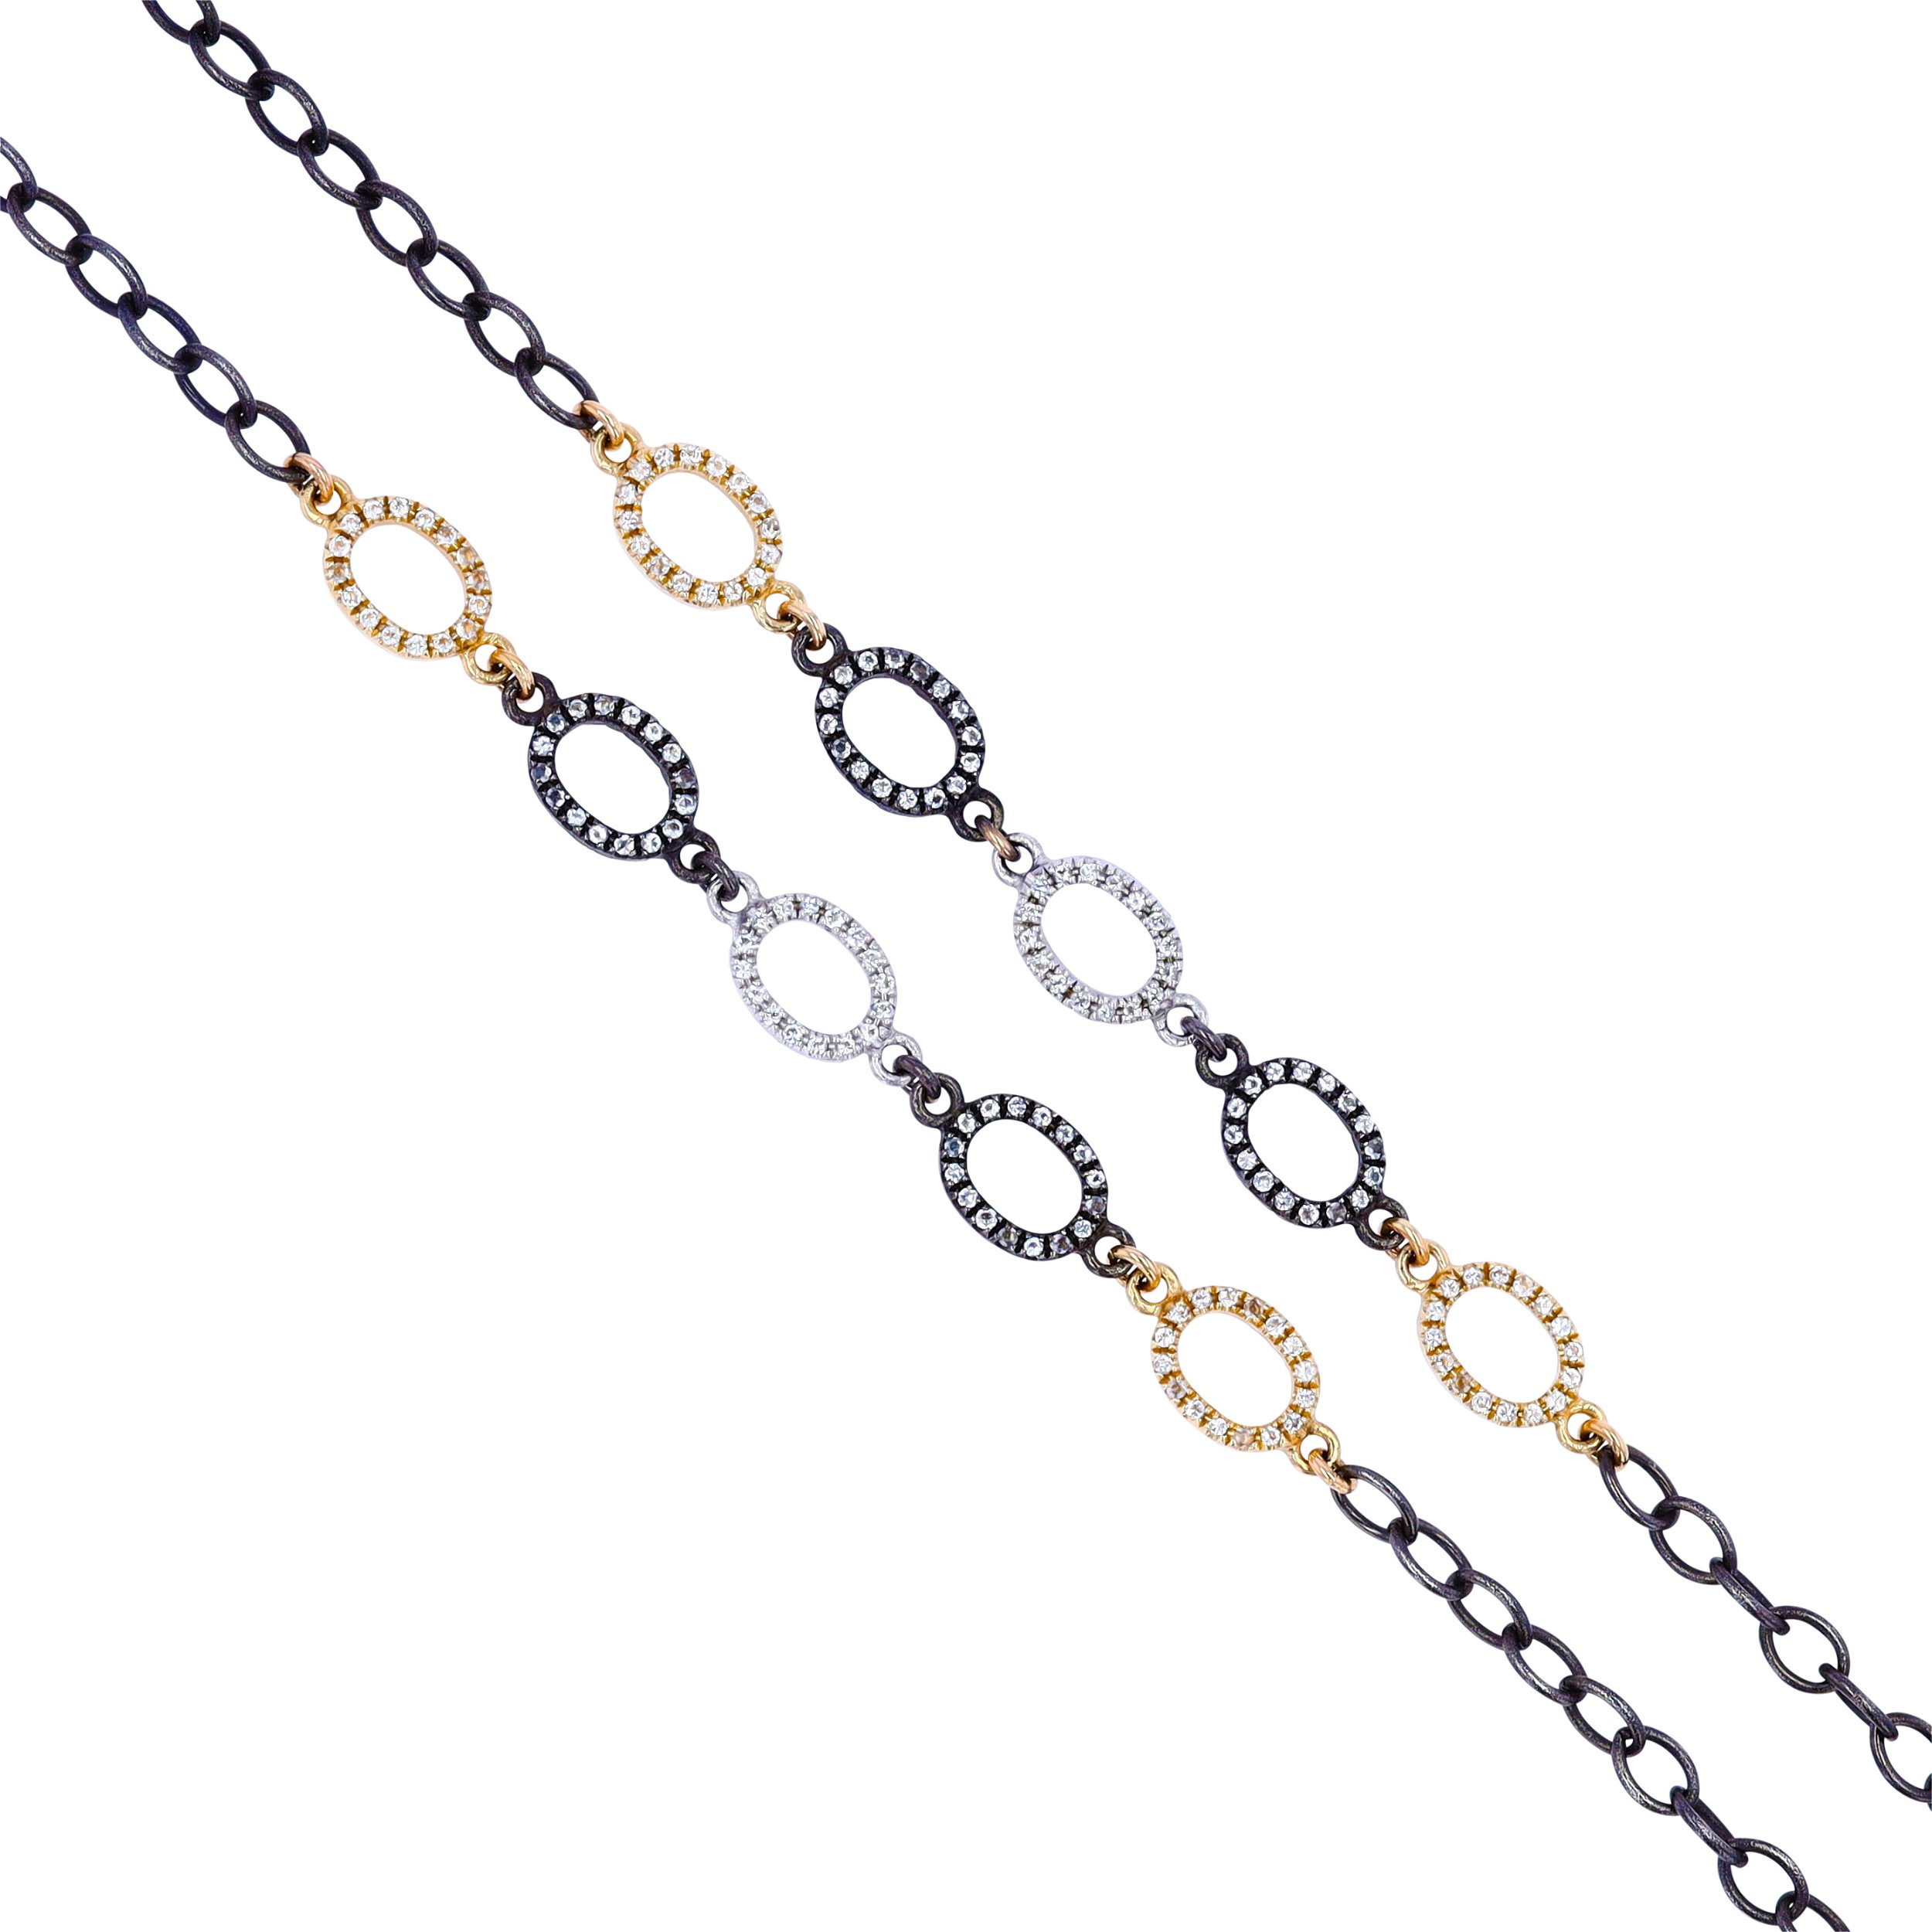 White Aquamarine Layering Chain - 32" Length